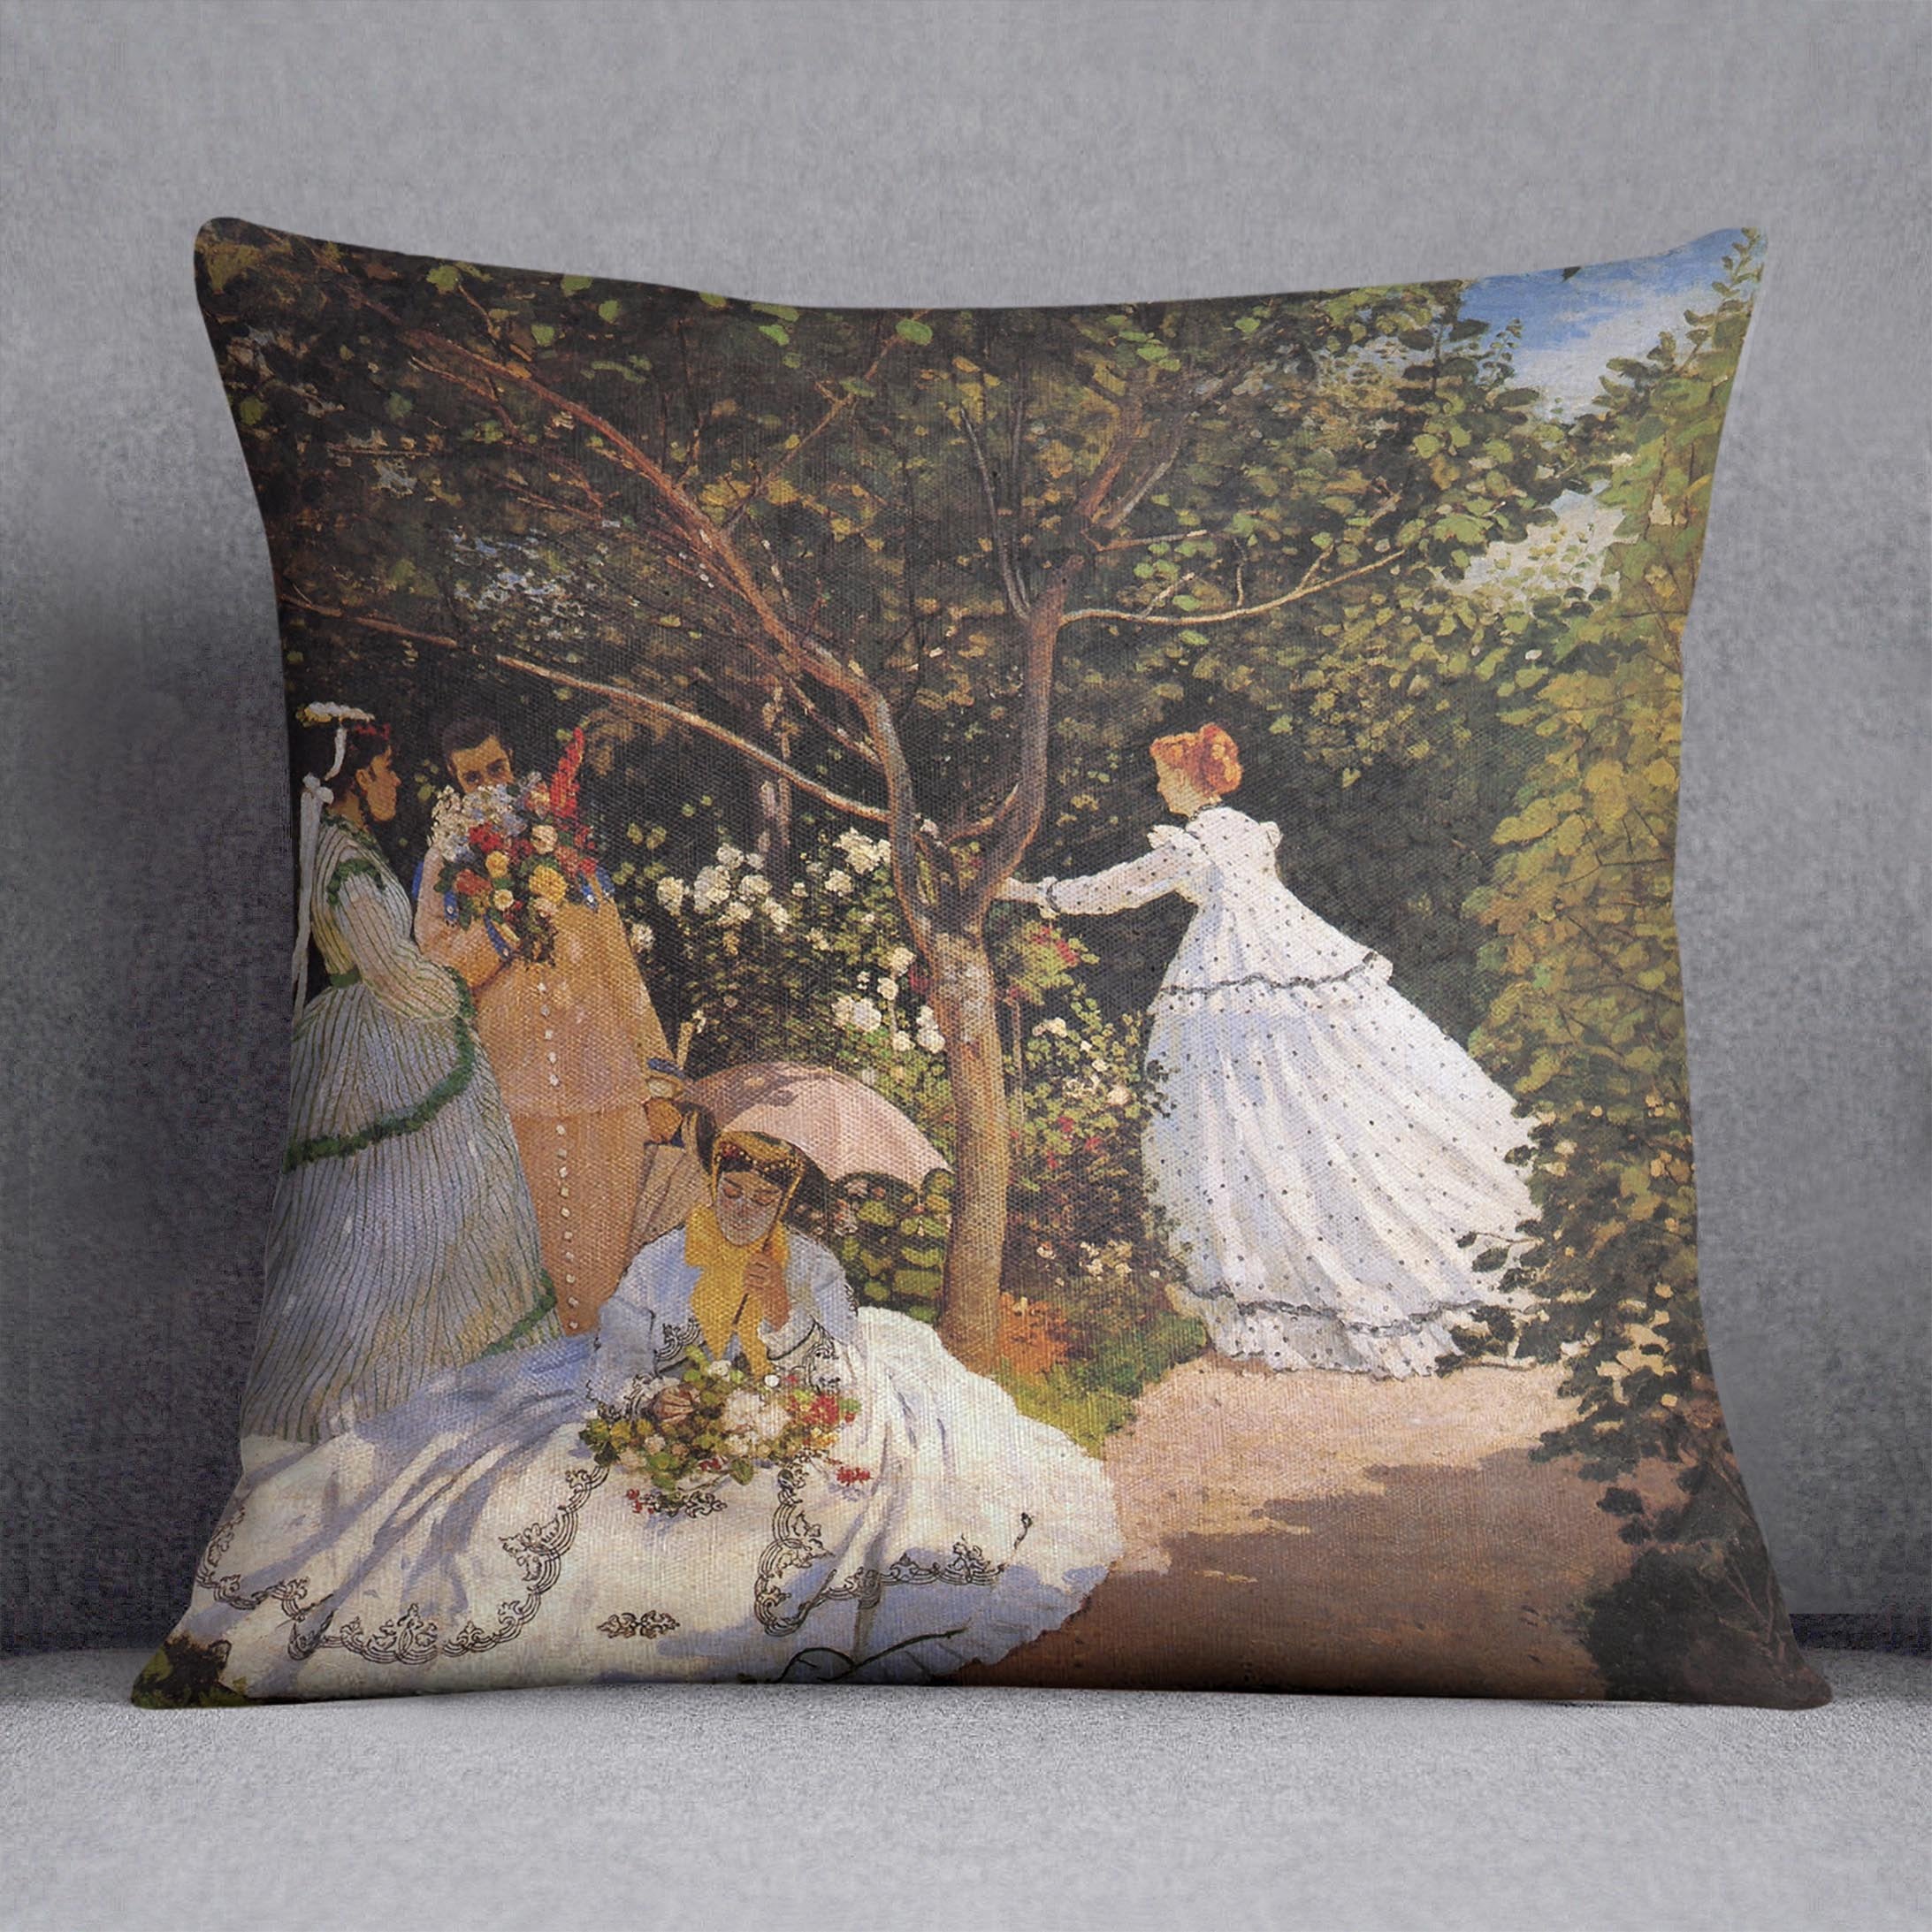 Women in the Garden by Monet Throw Pillow